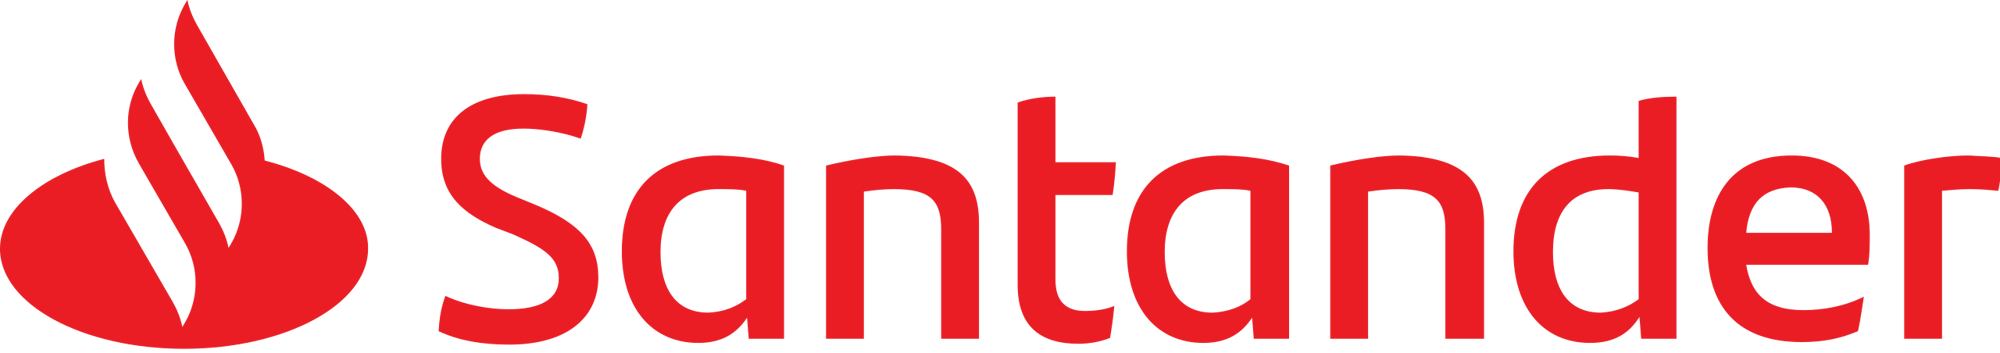 Banco_Santander_Logotipo.svg